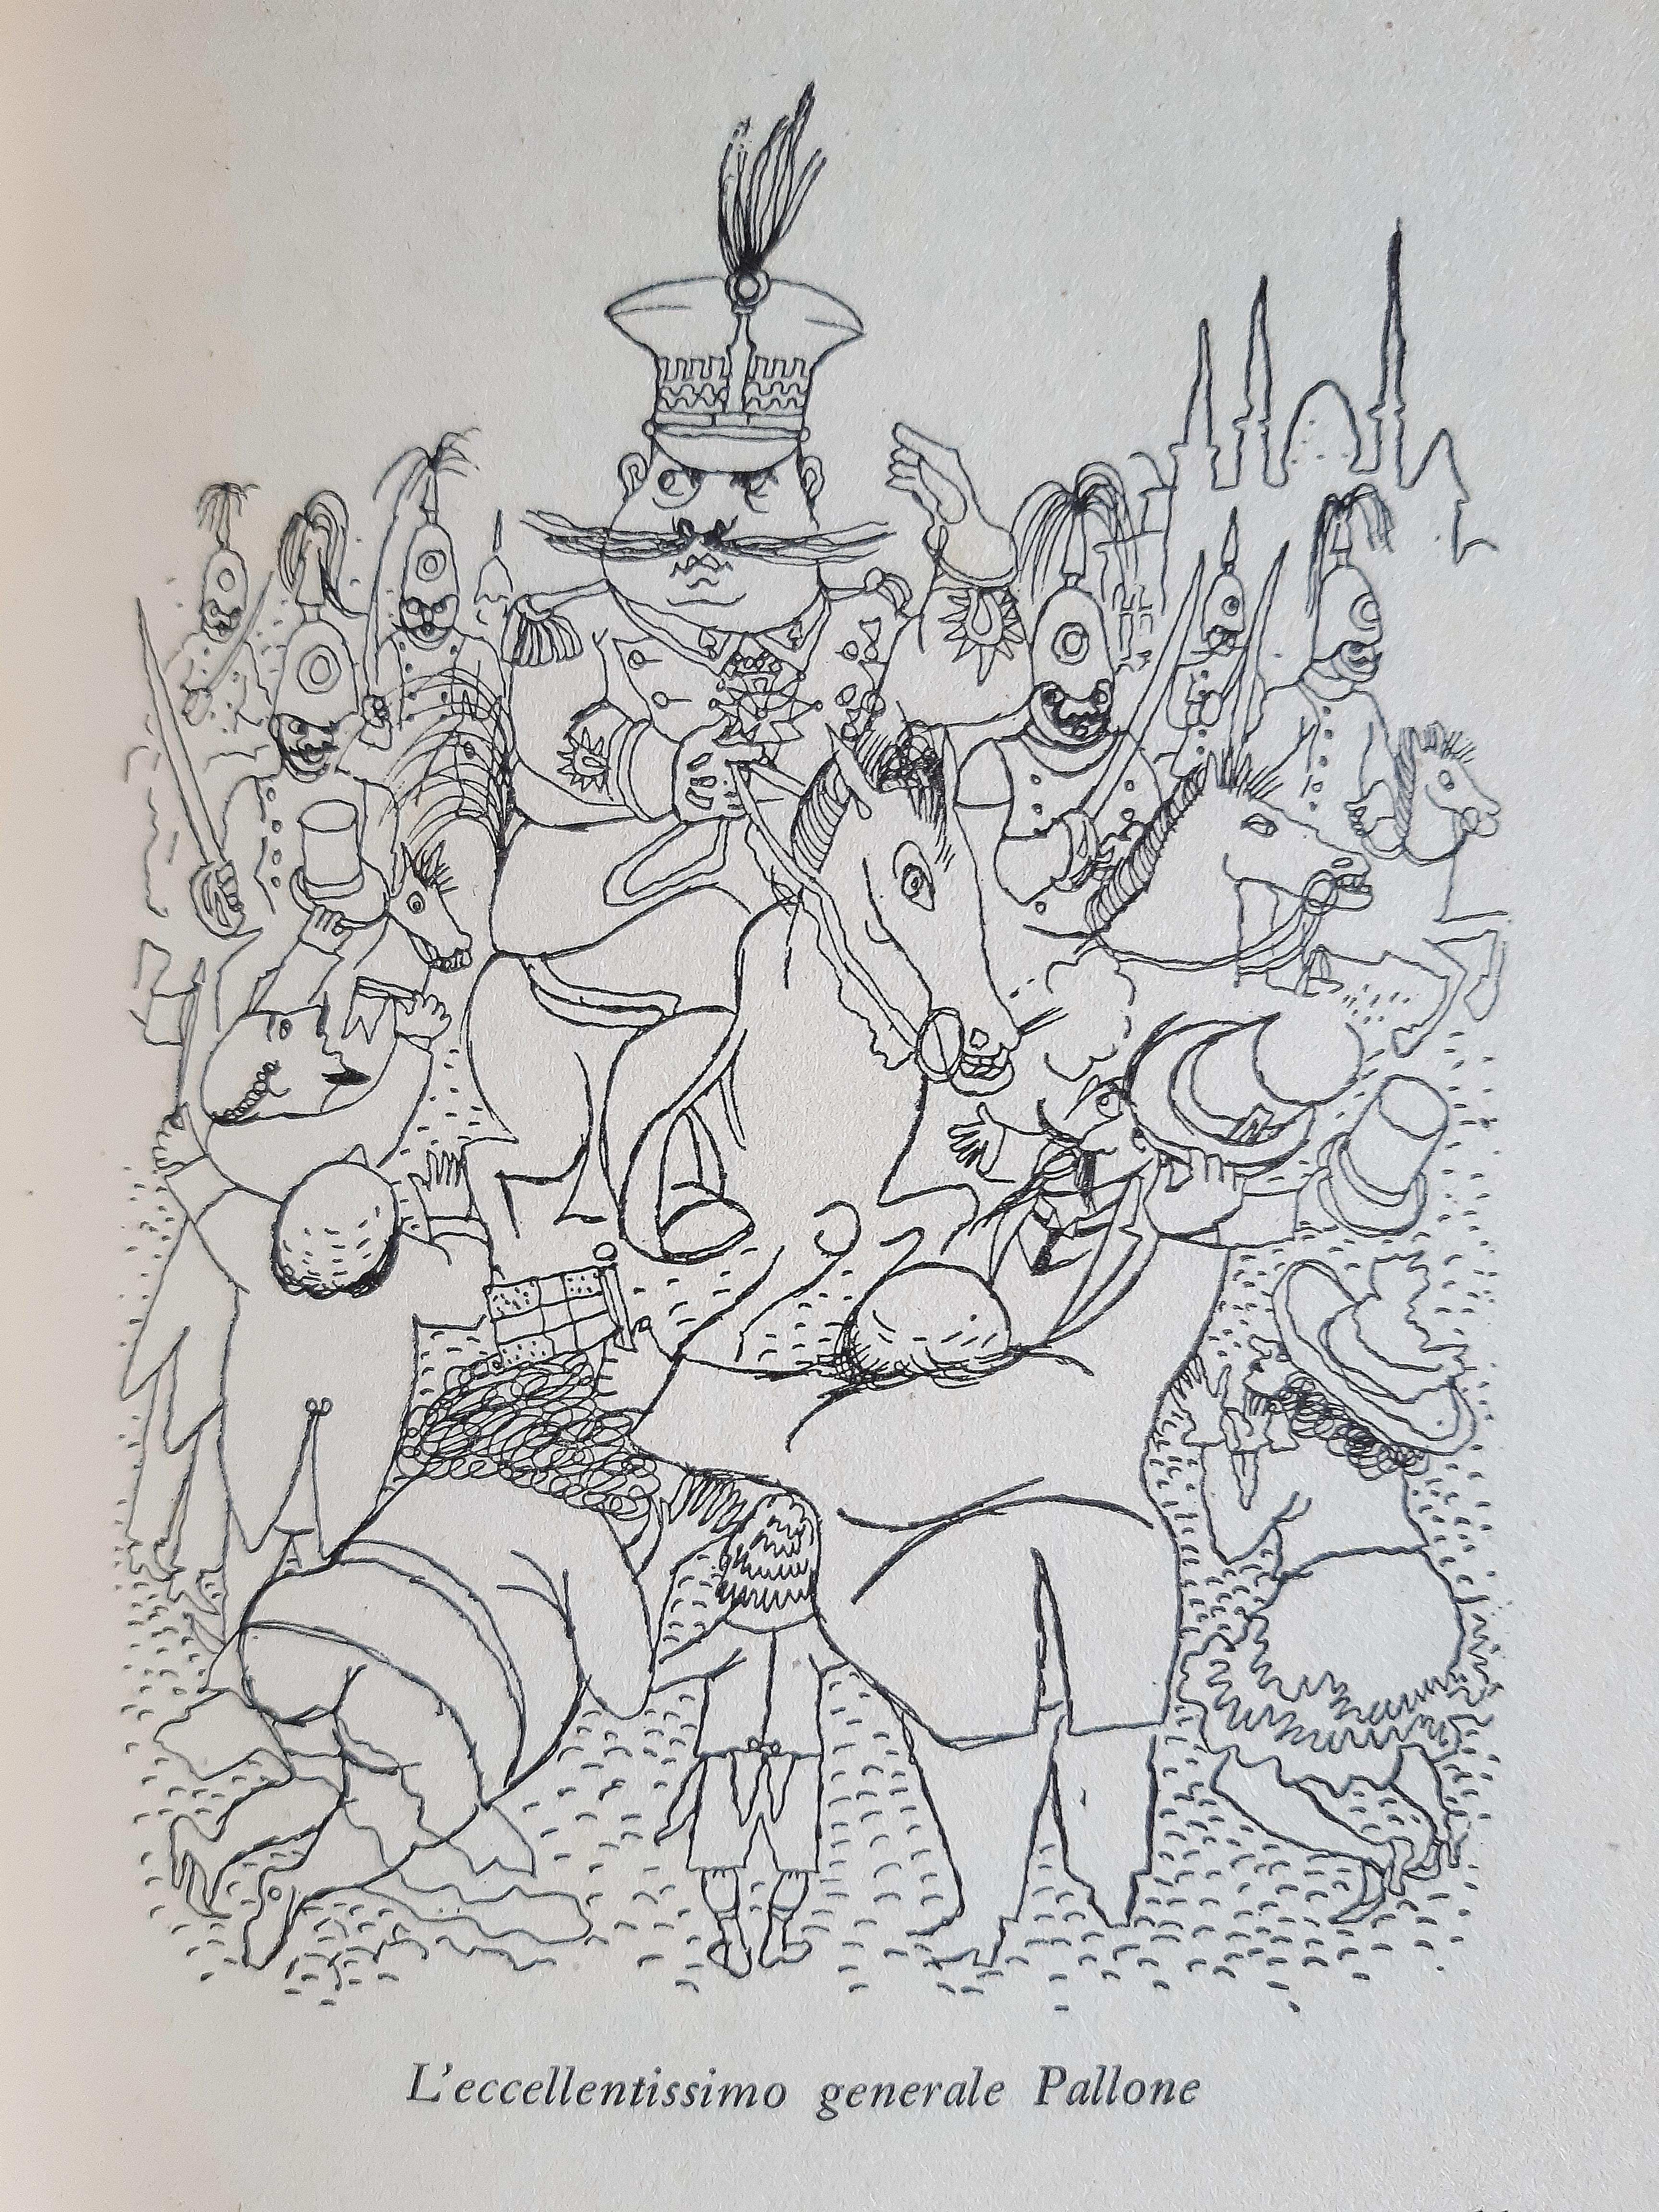 La Coda di Paglia - Rare Book illustrated by Mino Maccari - 1949 For Sale 1